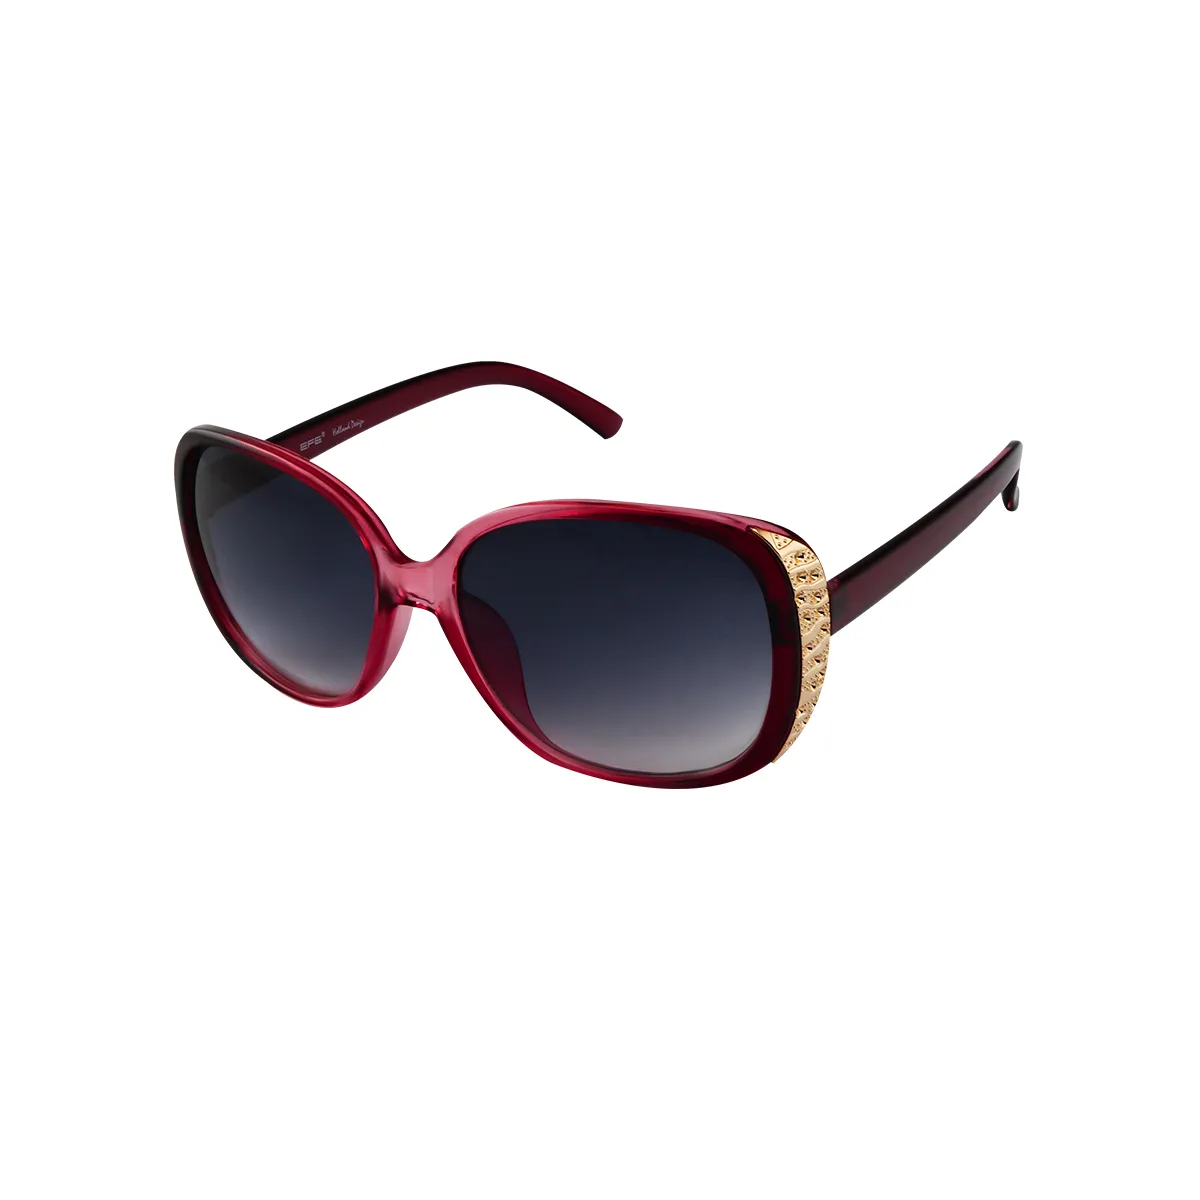 Yvette - Oval Red Sunglasses for Women